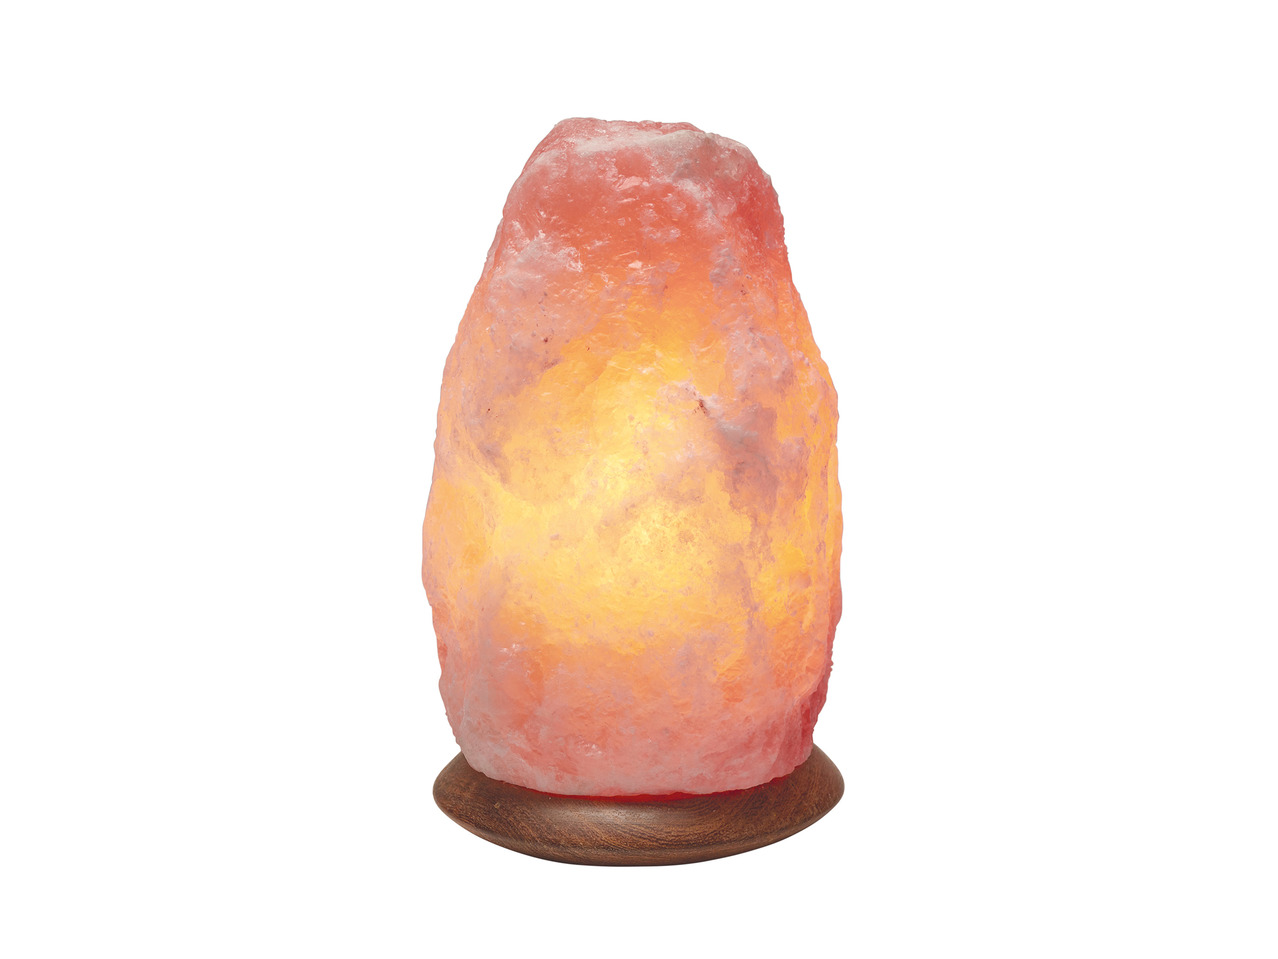 Livarno Lux Salt Crystal Lamp1